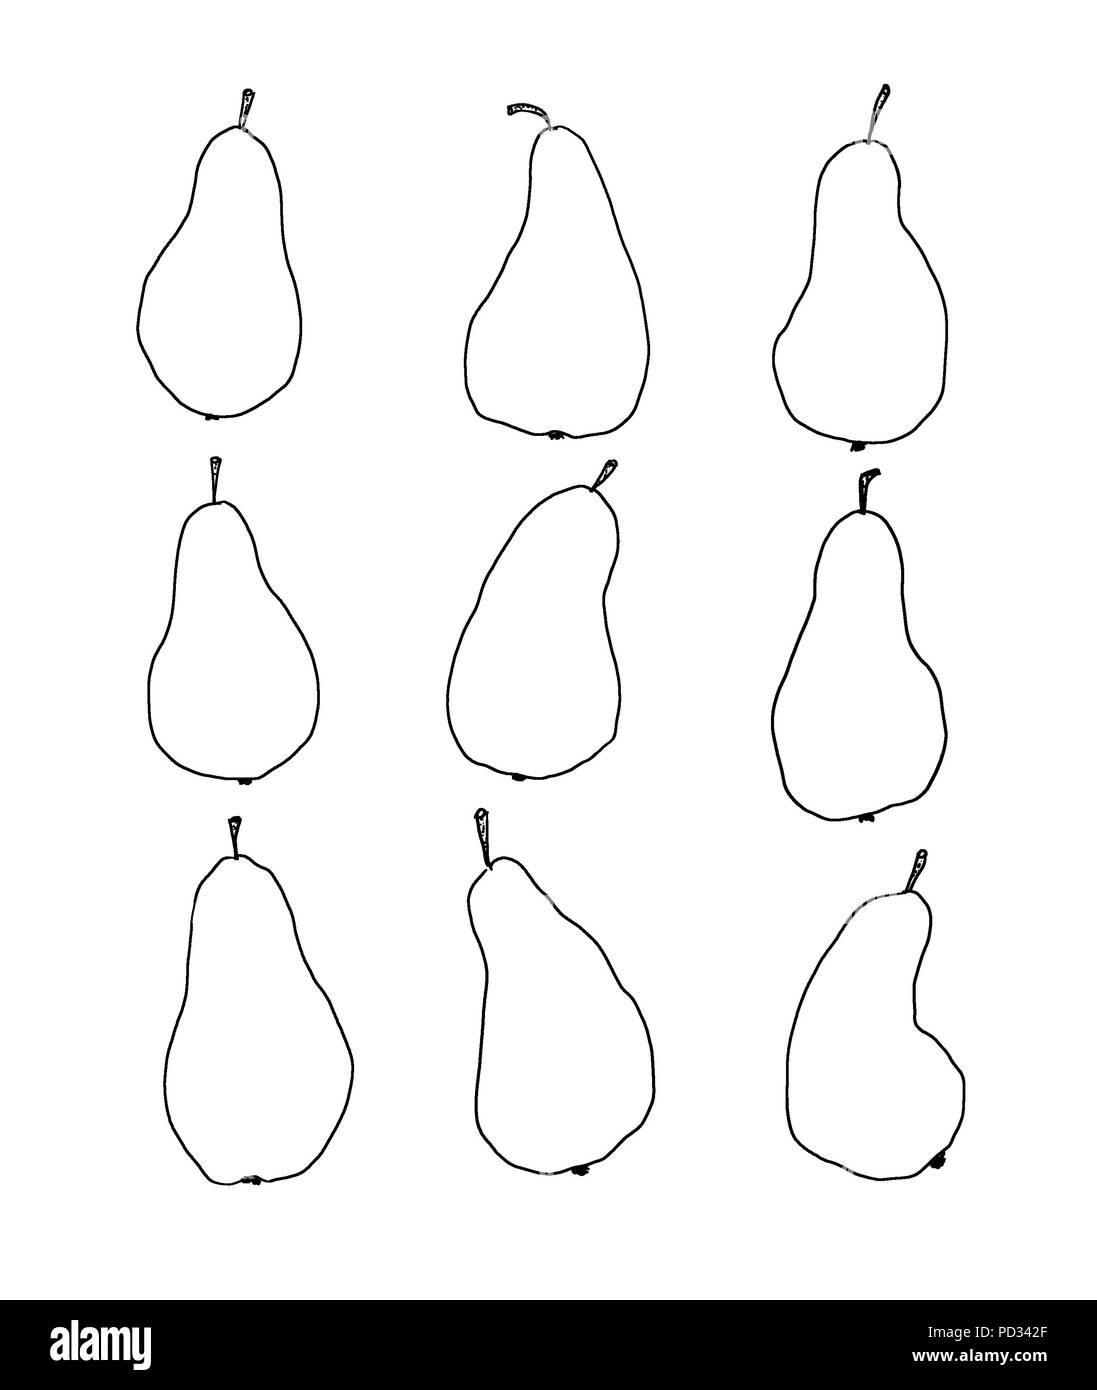 Conjunto de 9 frutas pera. Dibujadas a mano una ilustración de las peras de  esquema. Simple, minimalista dibujo de frutas aisladas sobre fondo blanco  Fotografía de stock - Alamy